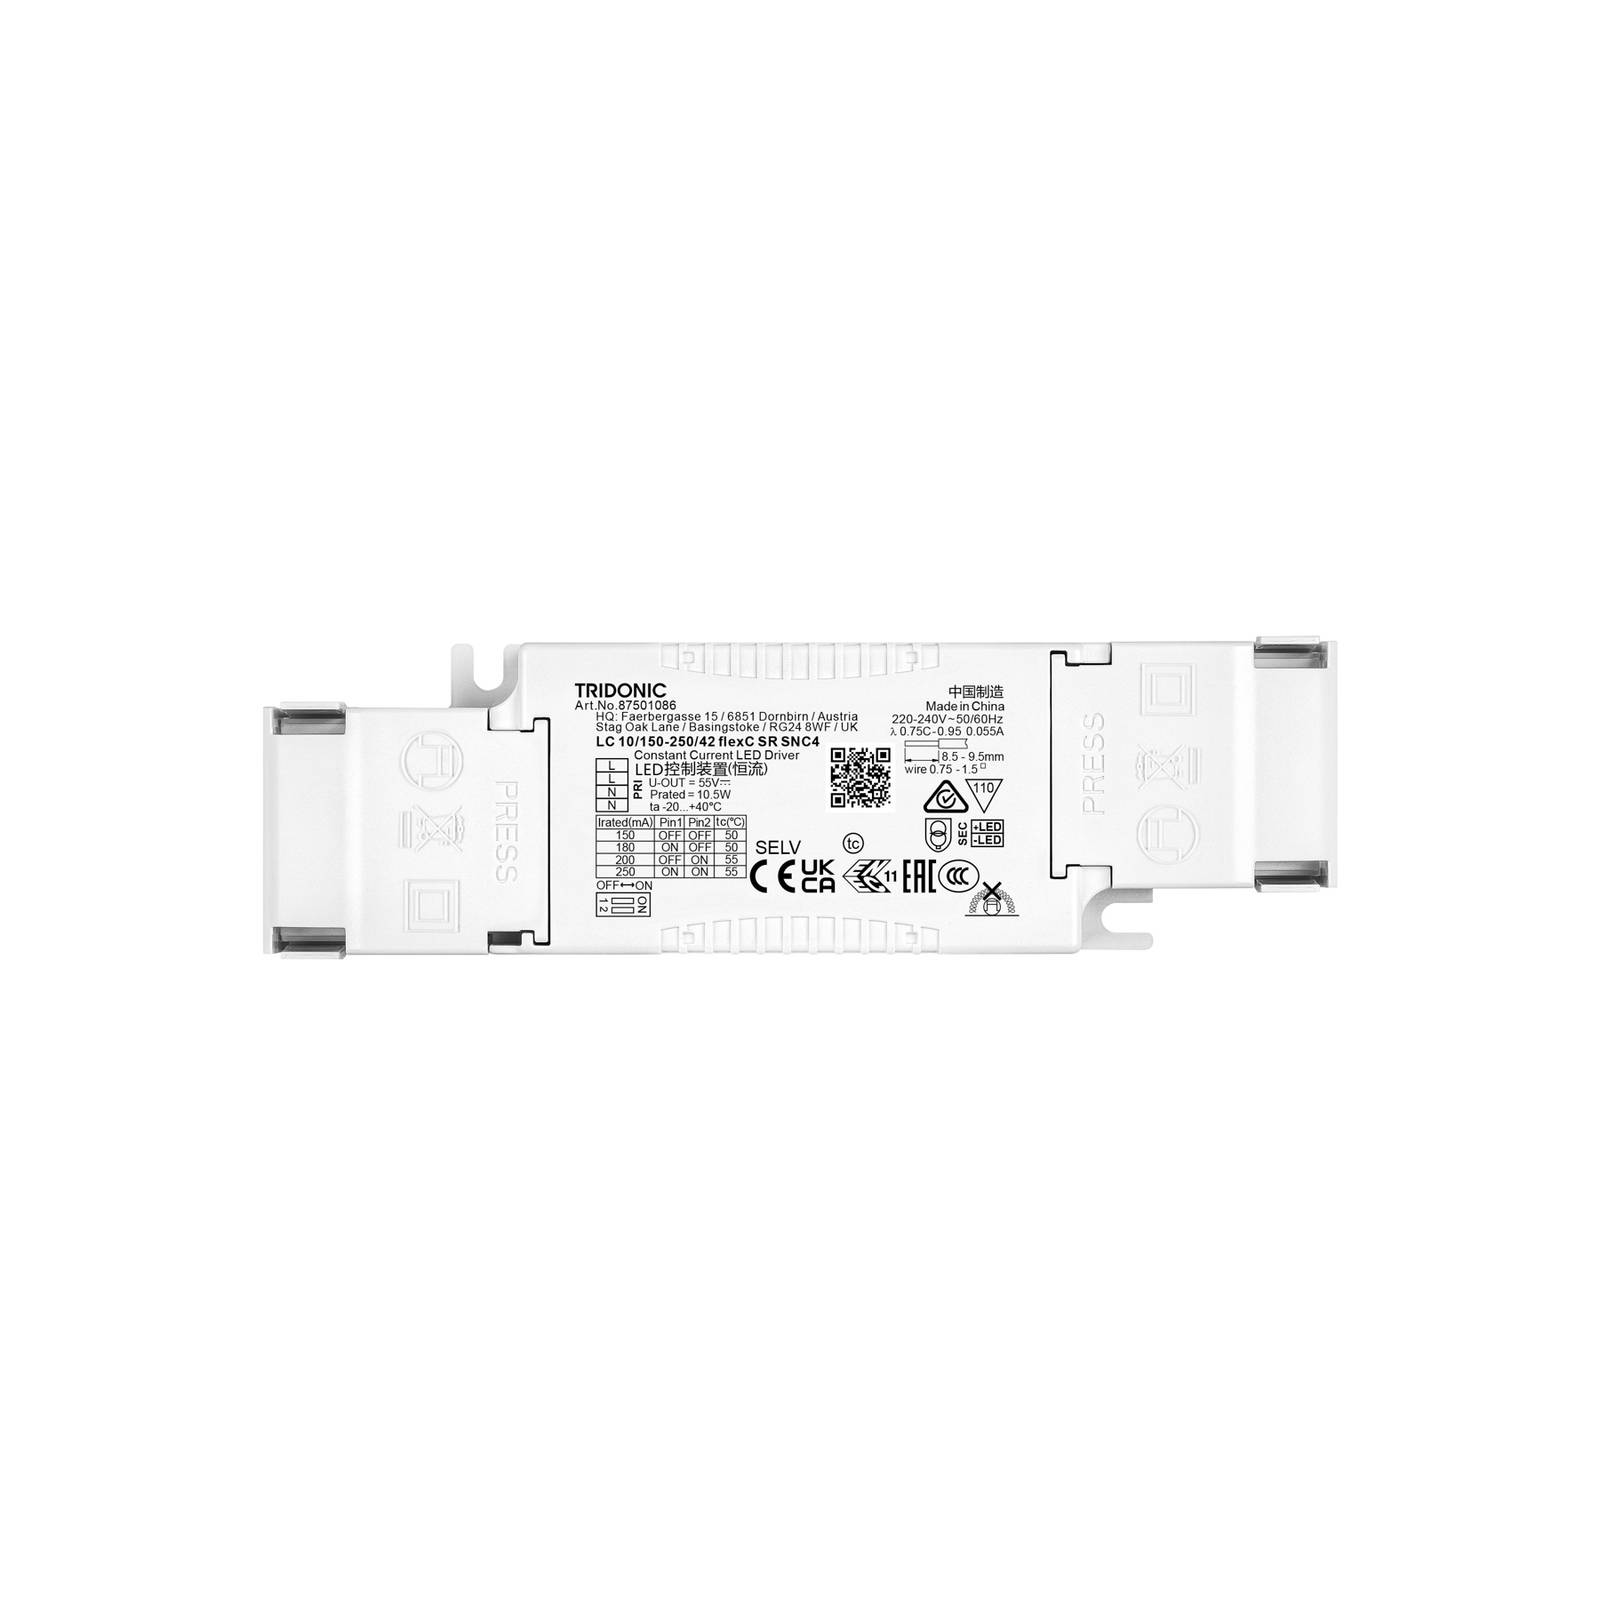 TRIDONIC LED kompakt drivdon LC 10/150-250/42 flexC SR SNC4